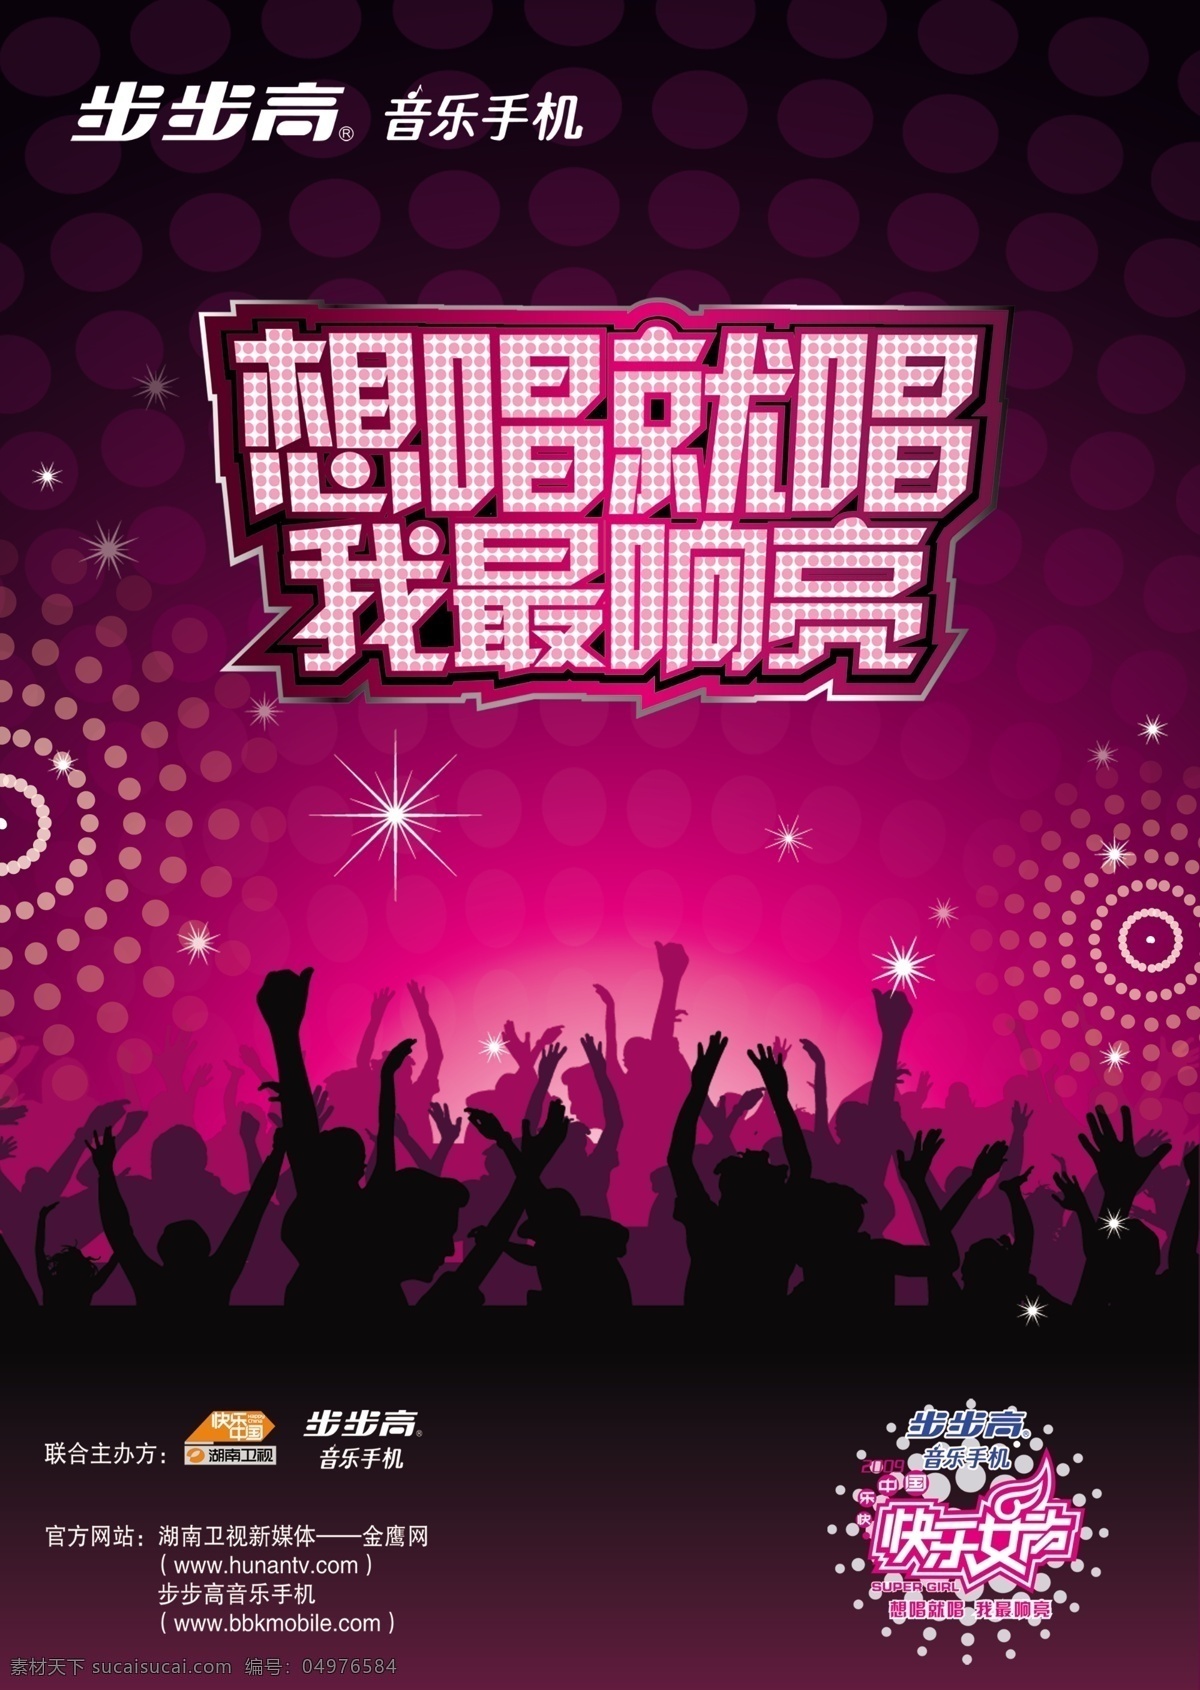 演唱会海报 想唱就唱 比赛 音乐 歌手 步步高 深圳 演唱会 星星 酒吧海报